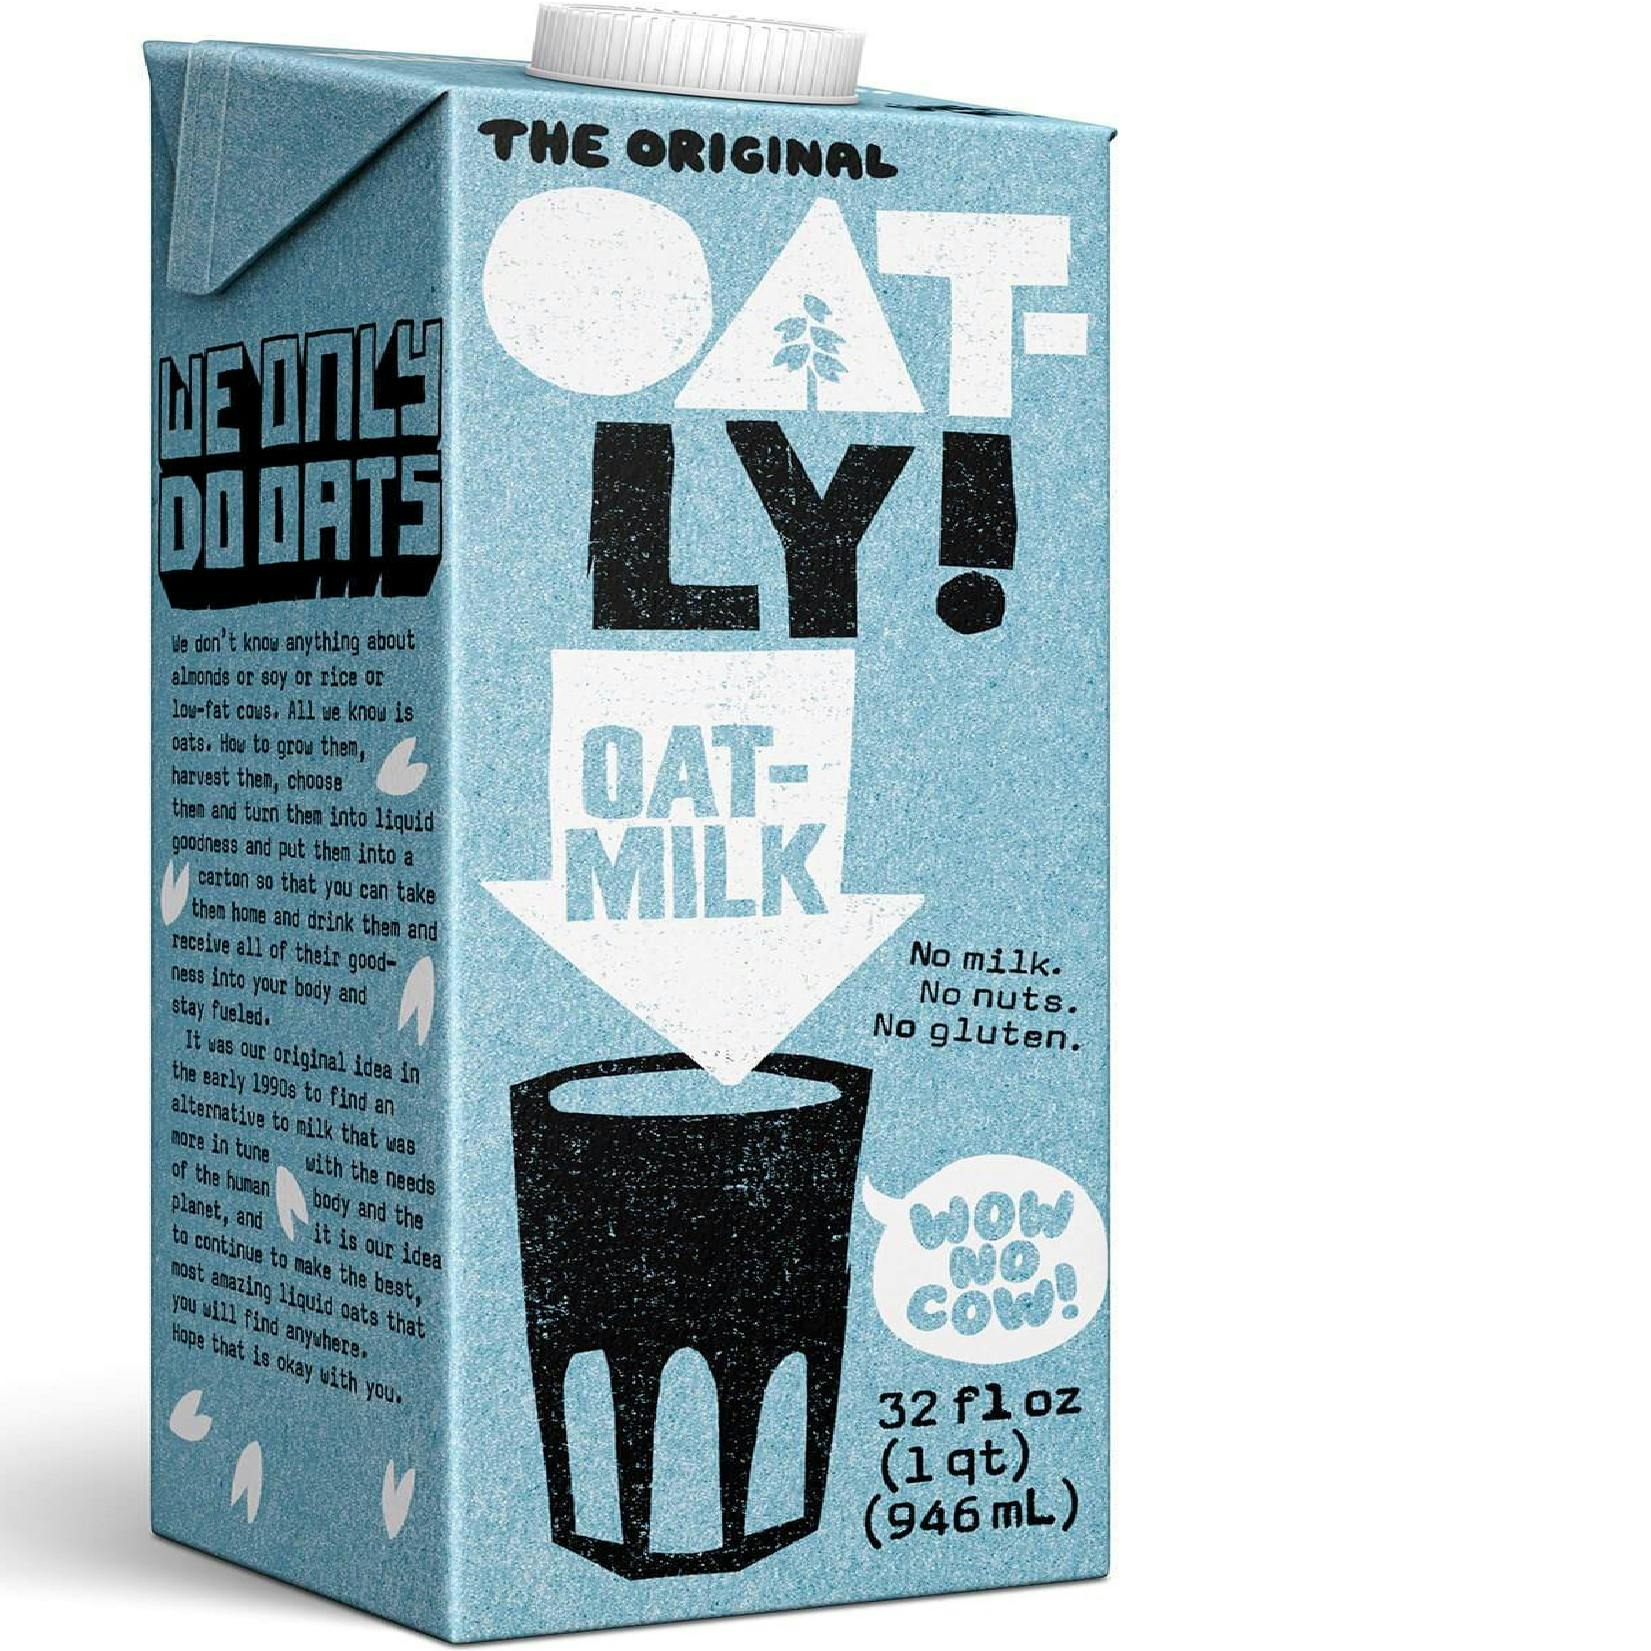 Oatly Milk, Barista Edition (32 oz)